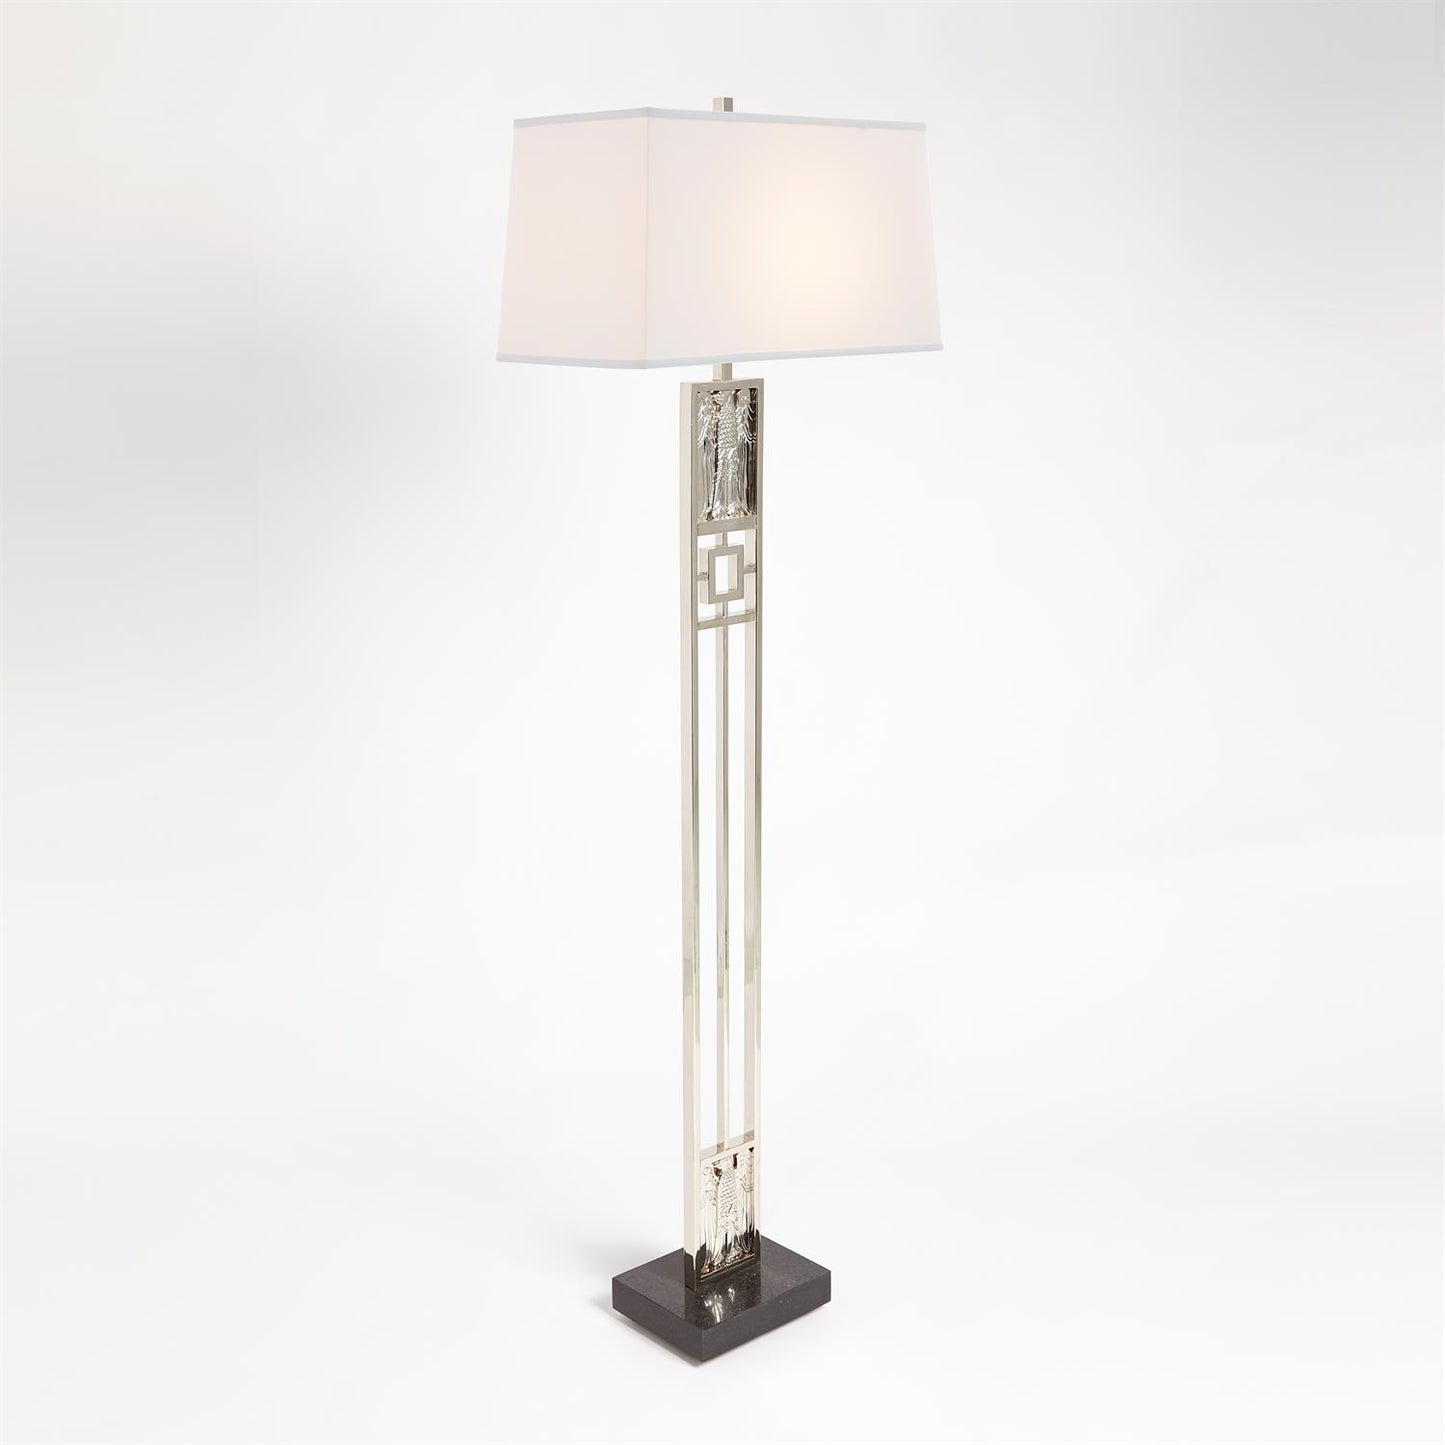 Republic Floor Lamp - Nickel - Grats Decor Interior Design & Build Inc.